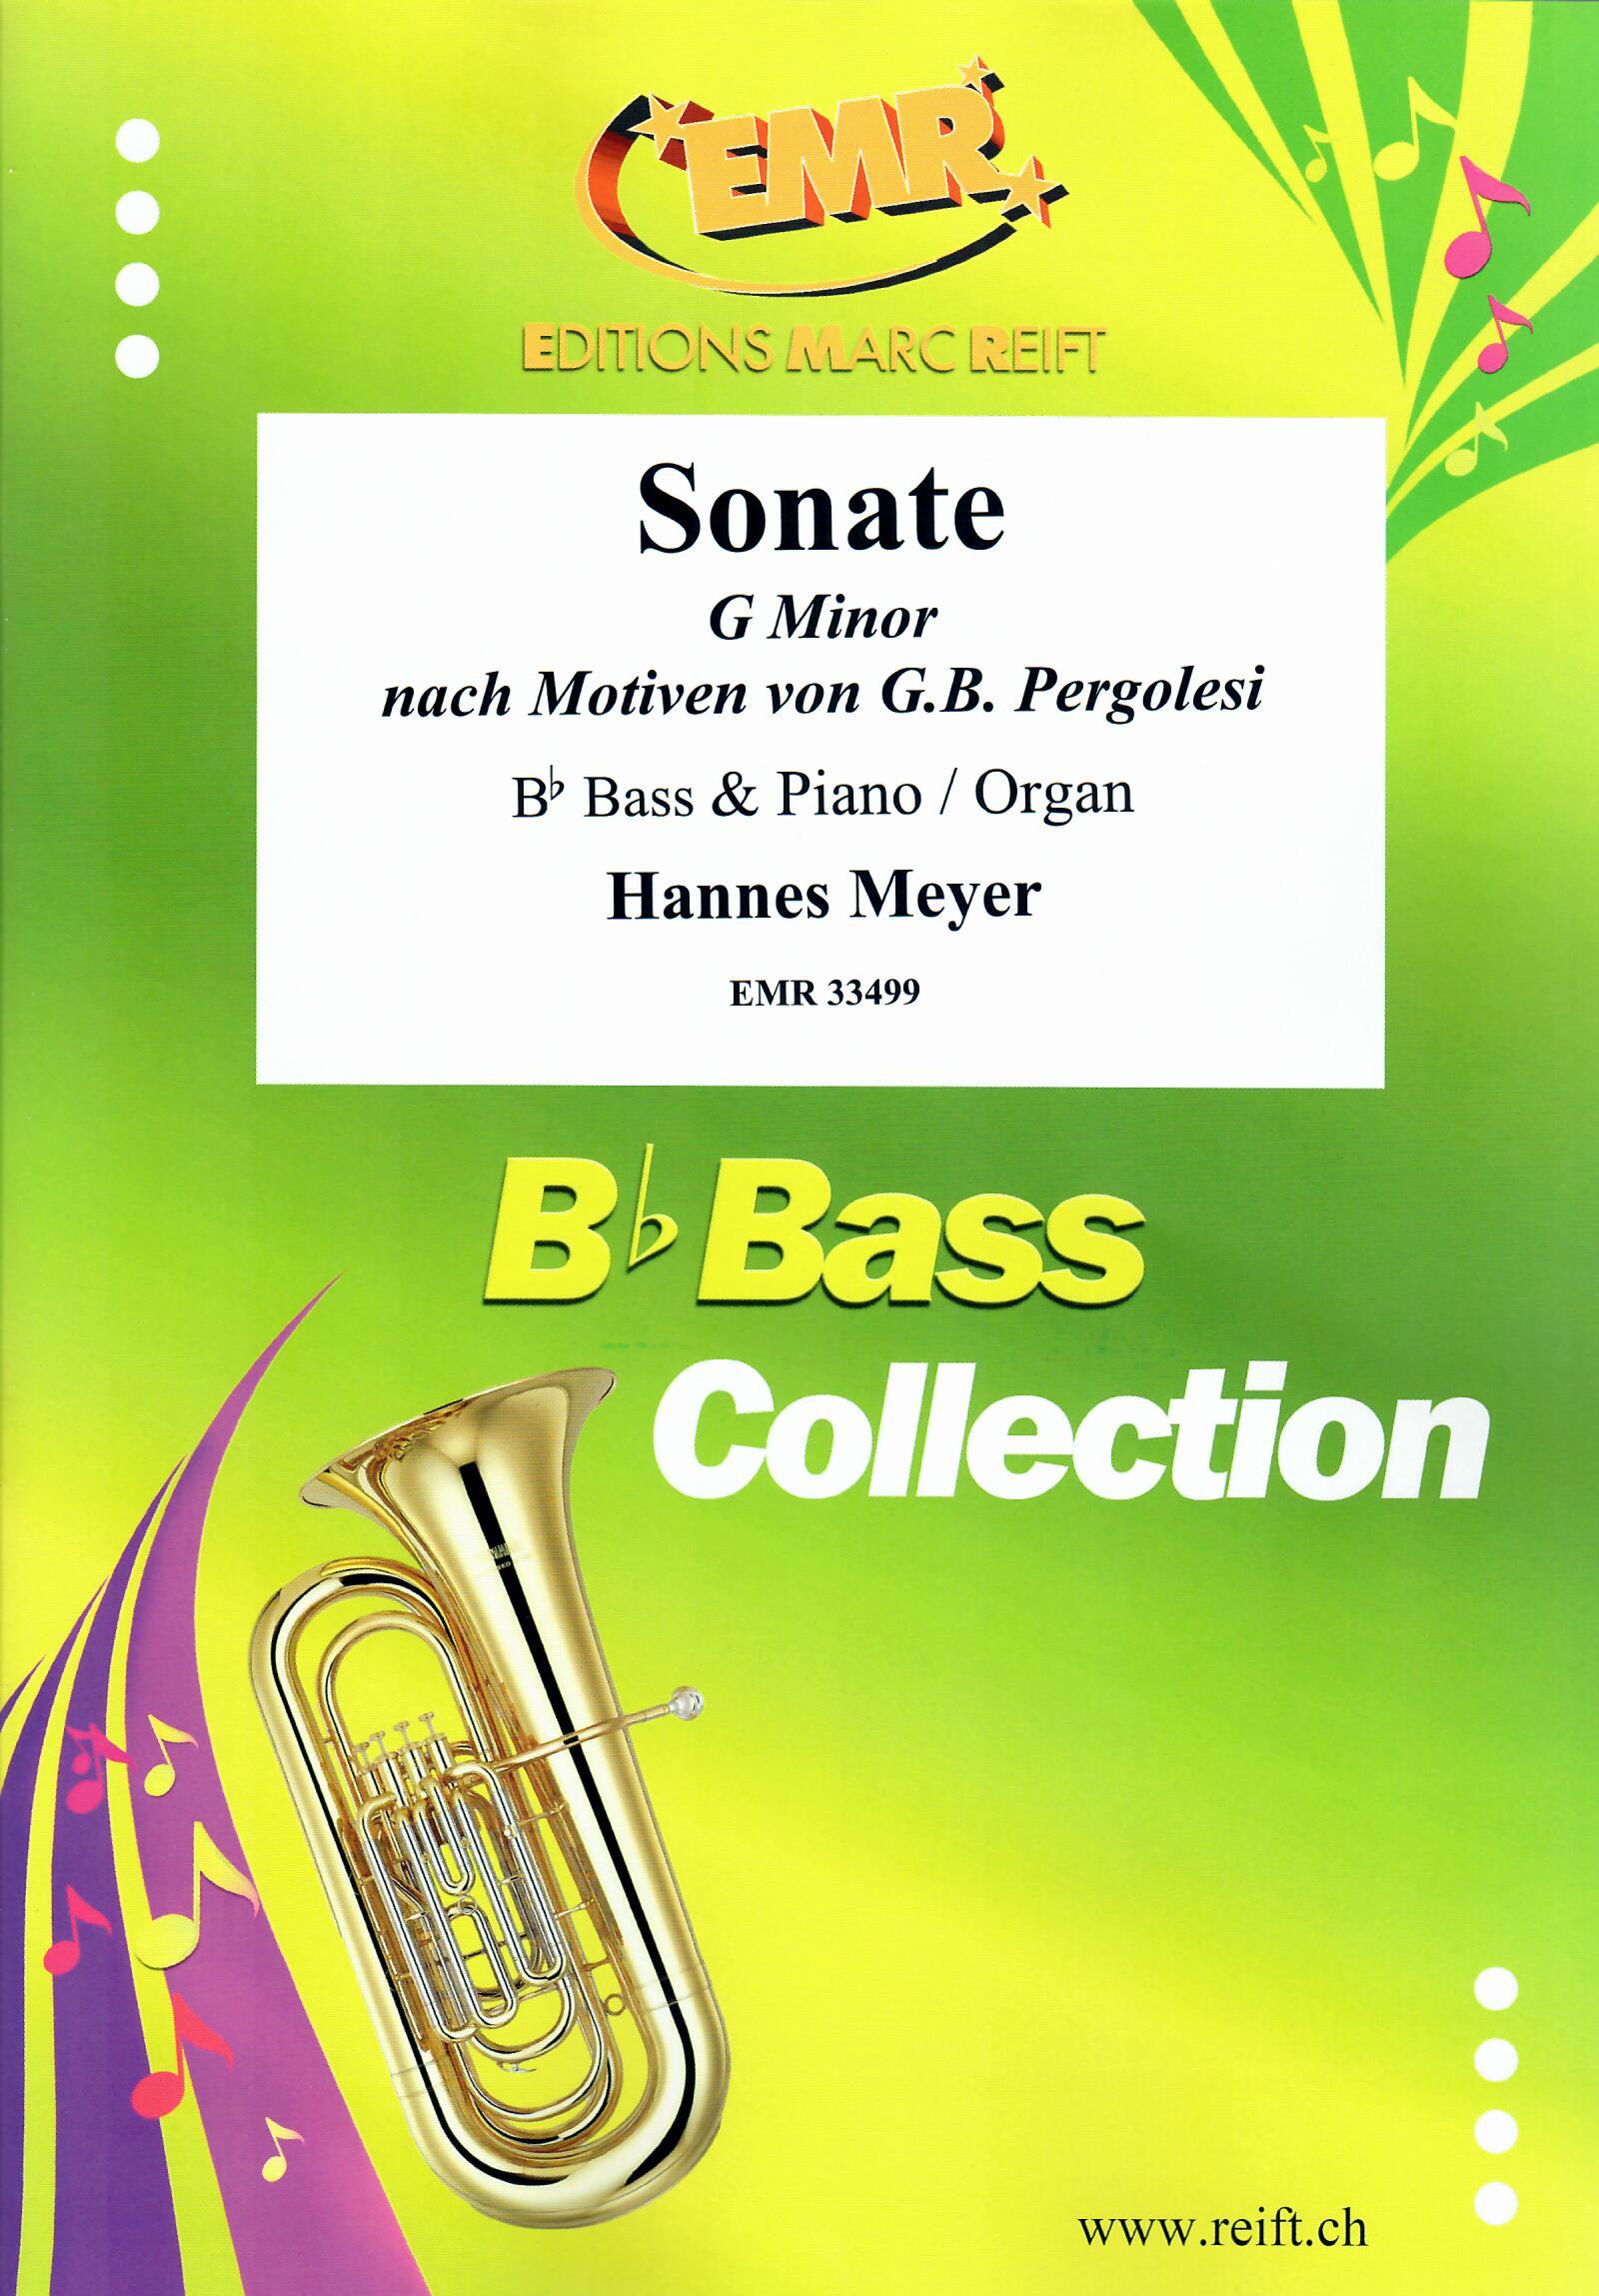 SONATE G MINOR, SOLOS - E♭. Bass